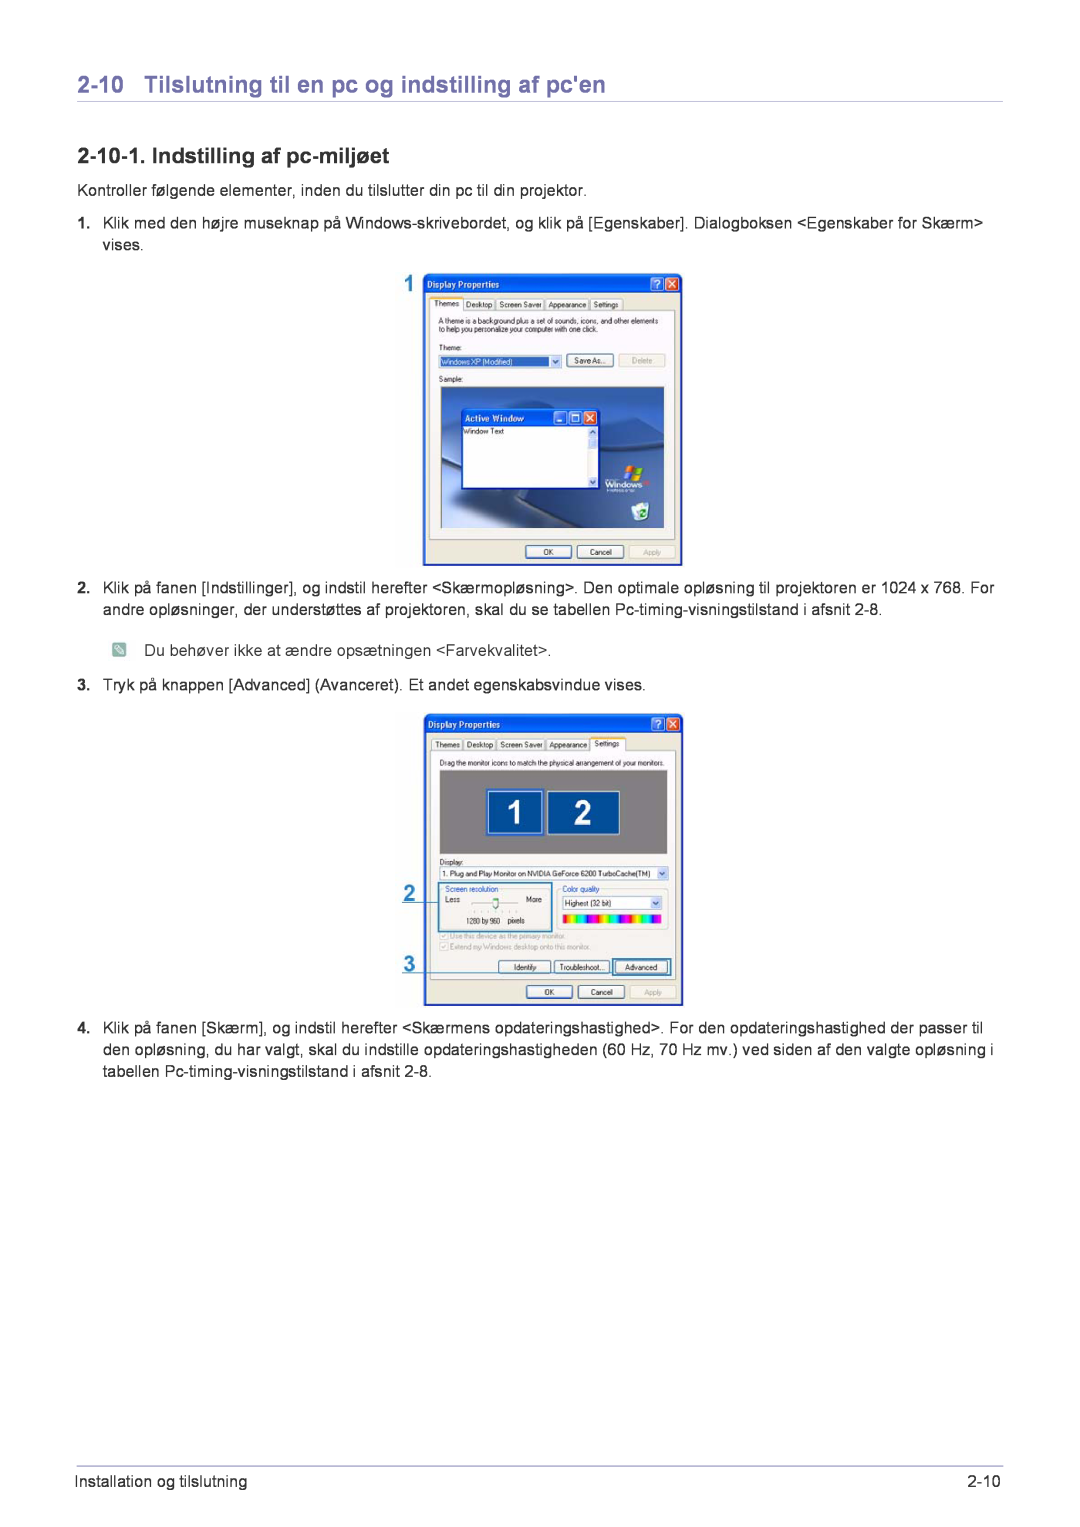 Samsung SP2553XWCX/EN manual Tilslutning til en pc og indstilling af pcen, Indstilling af pc-miljøet 